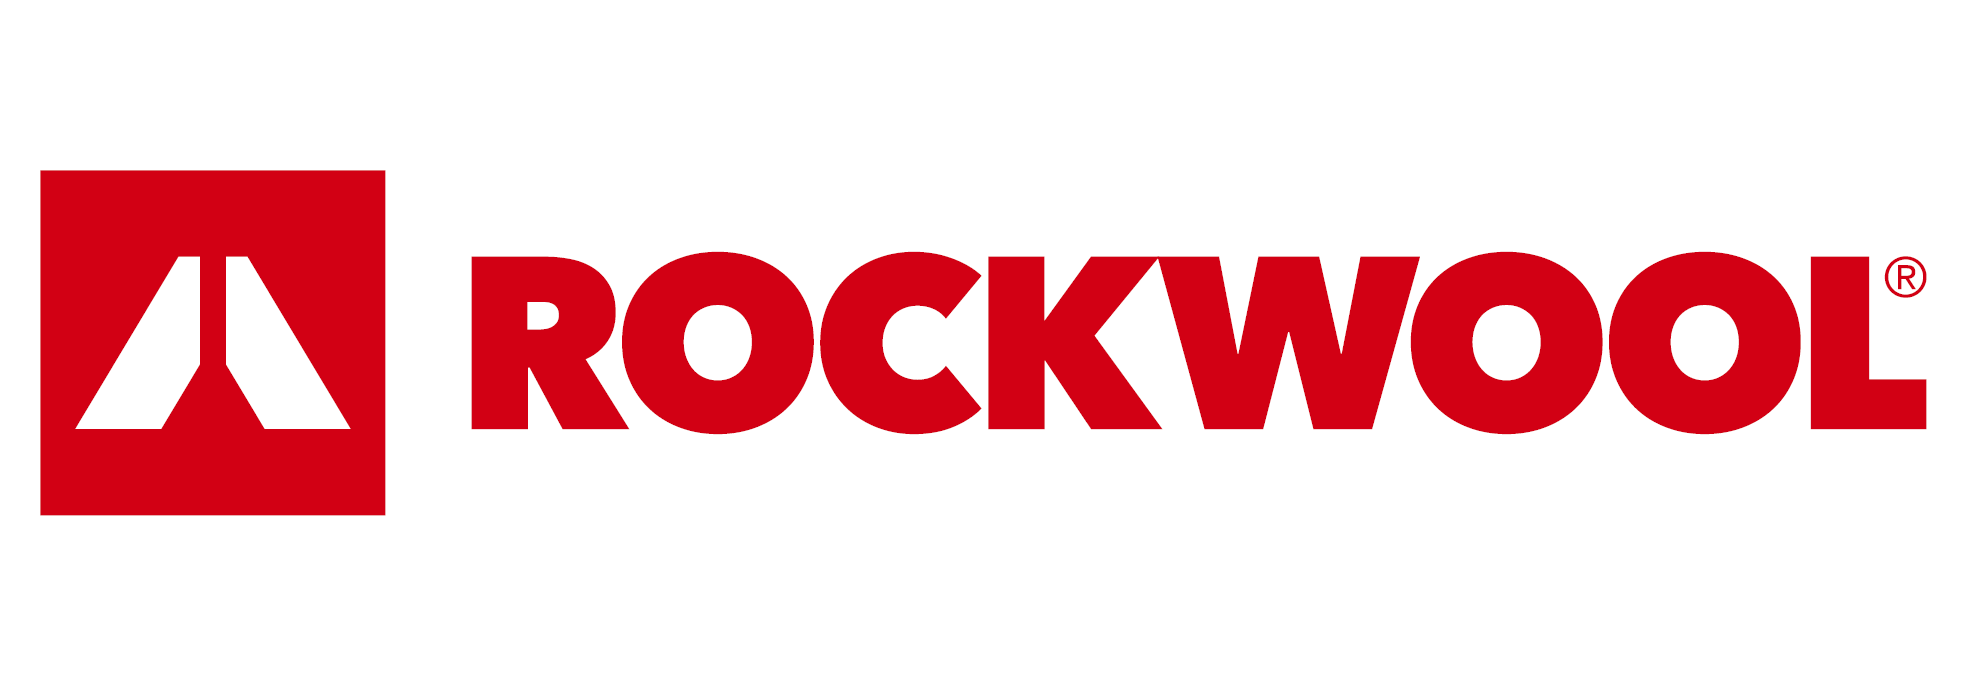 Rockwool Image